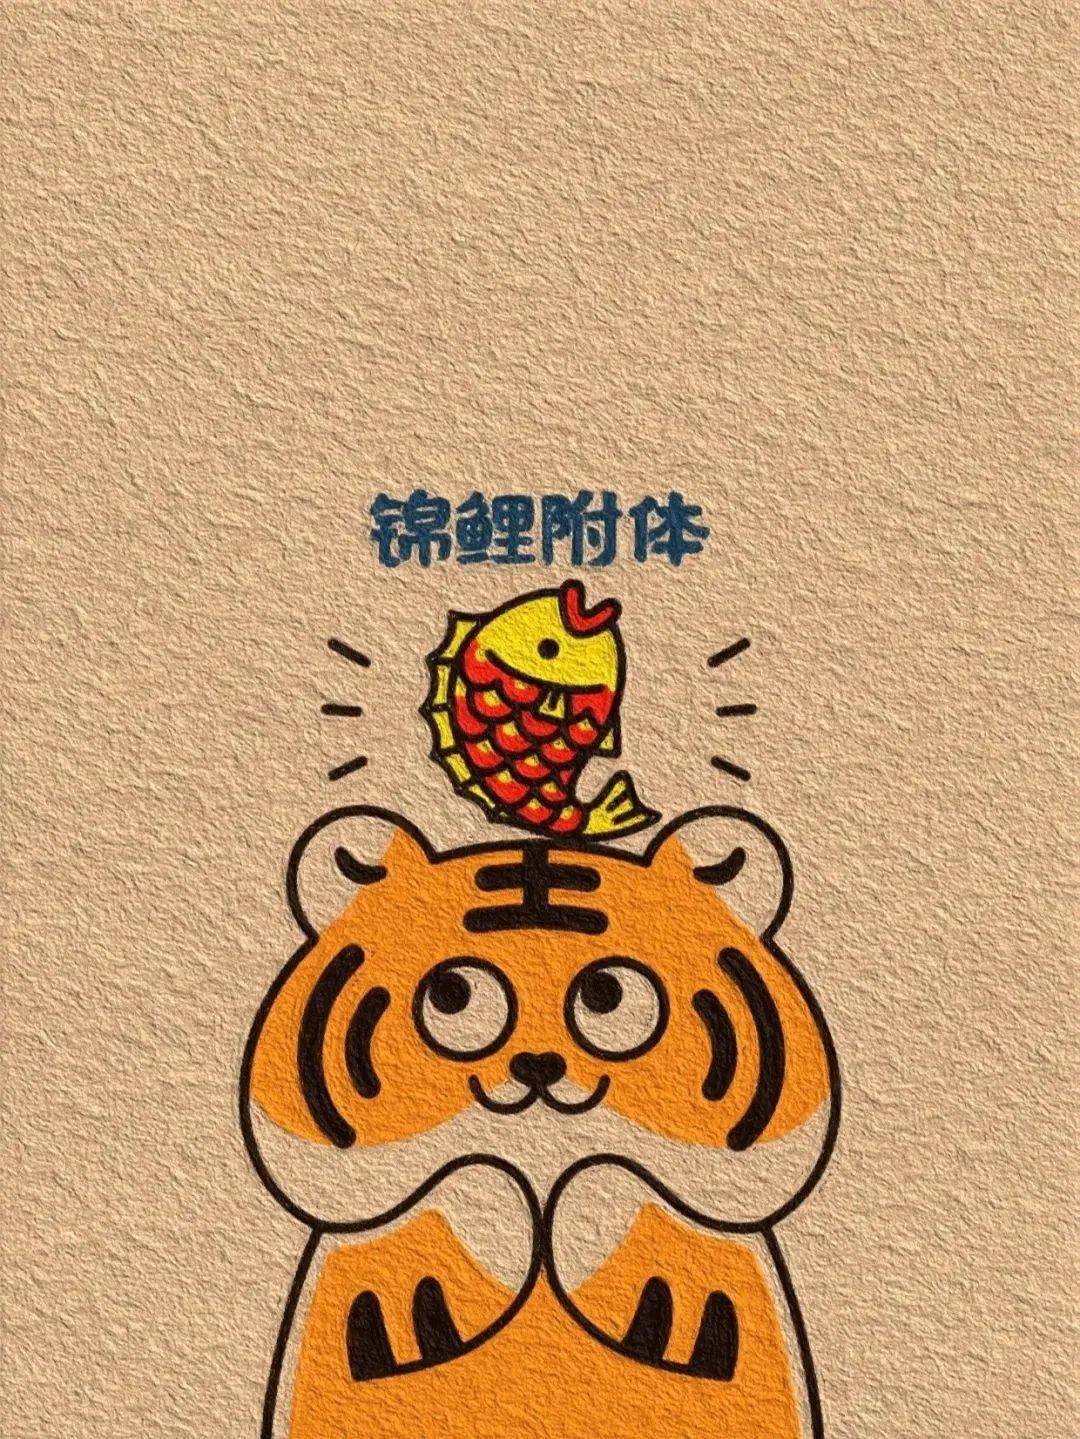 ※2022虎年春节祝福语大全！选一个发吧！